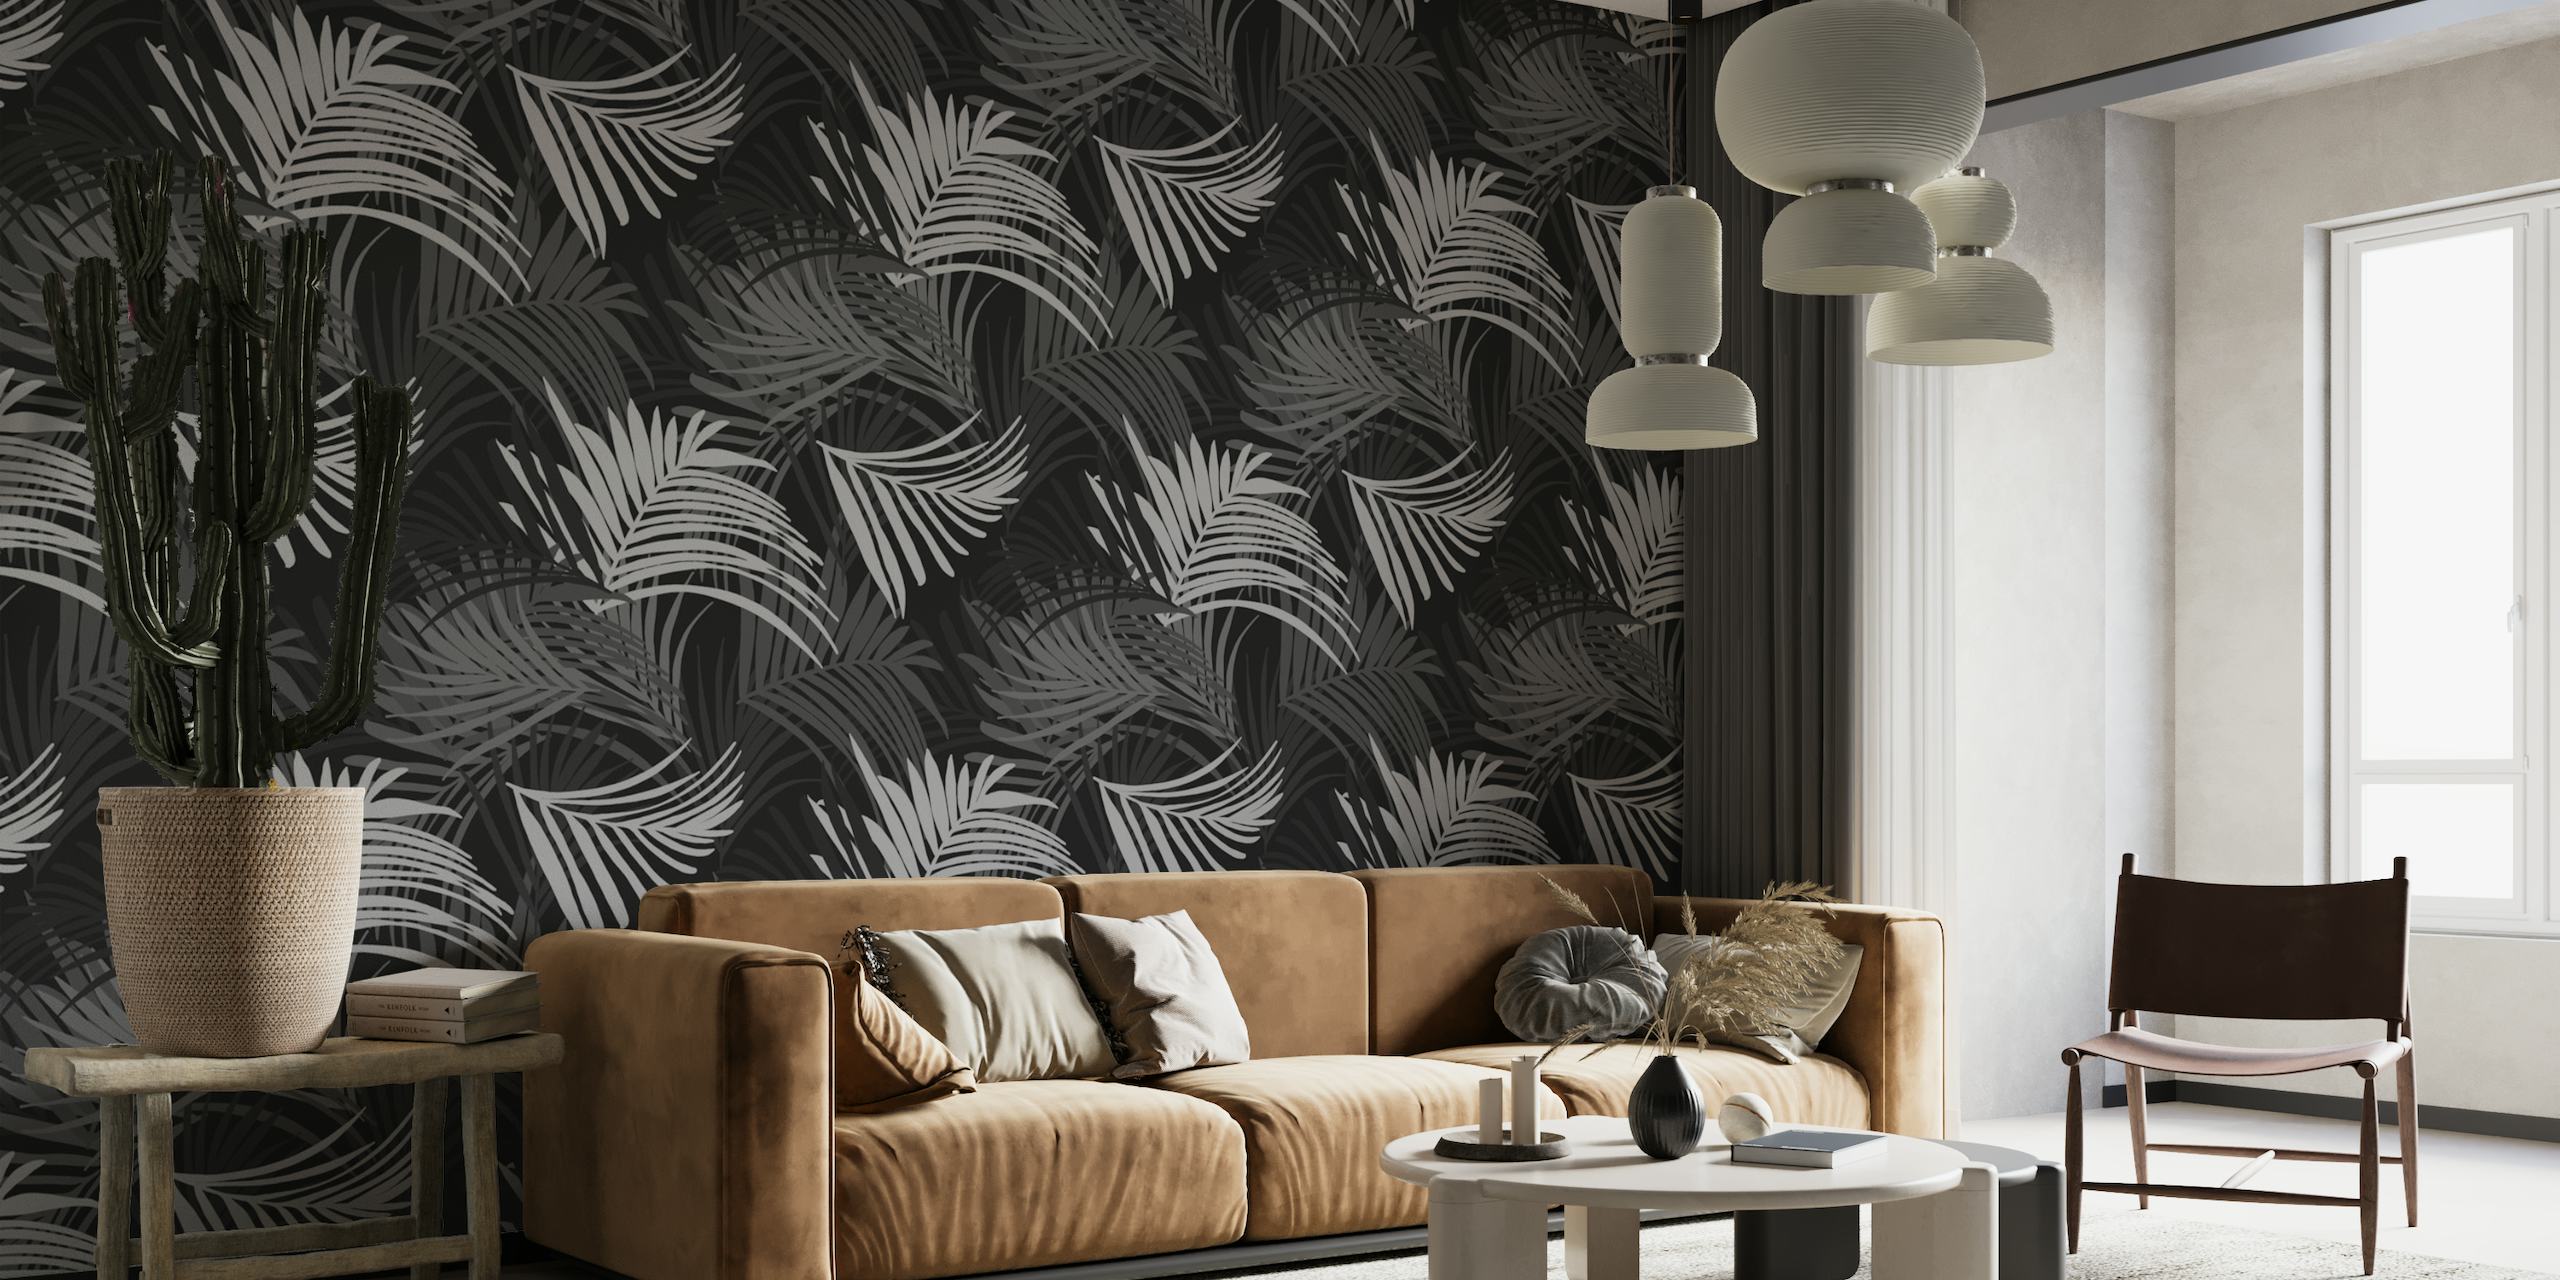 Zwart-witte muurschildering met tropisch palmbladpatroon, perfect voor het creëren van een sereen jungle-thema.